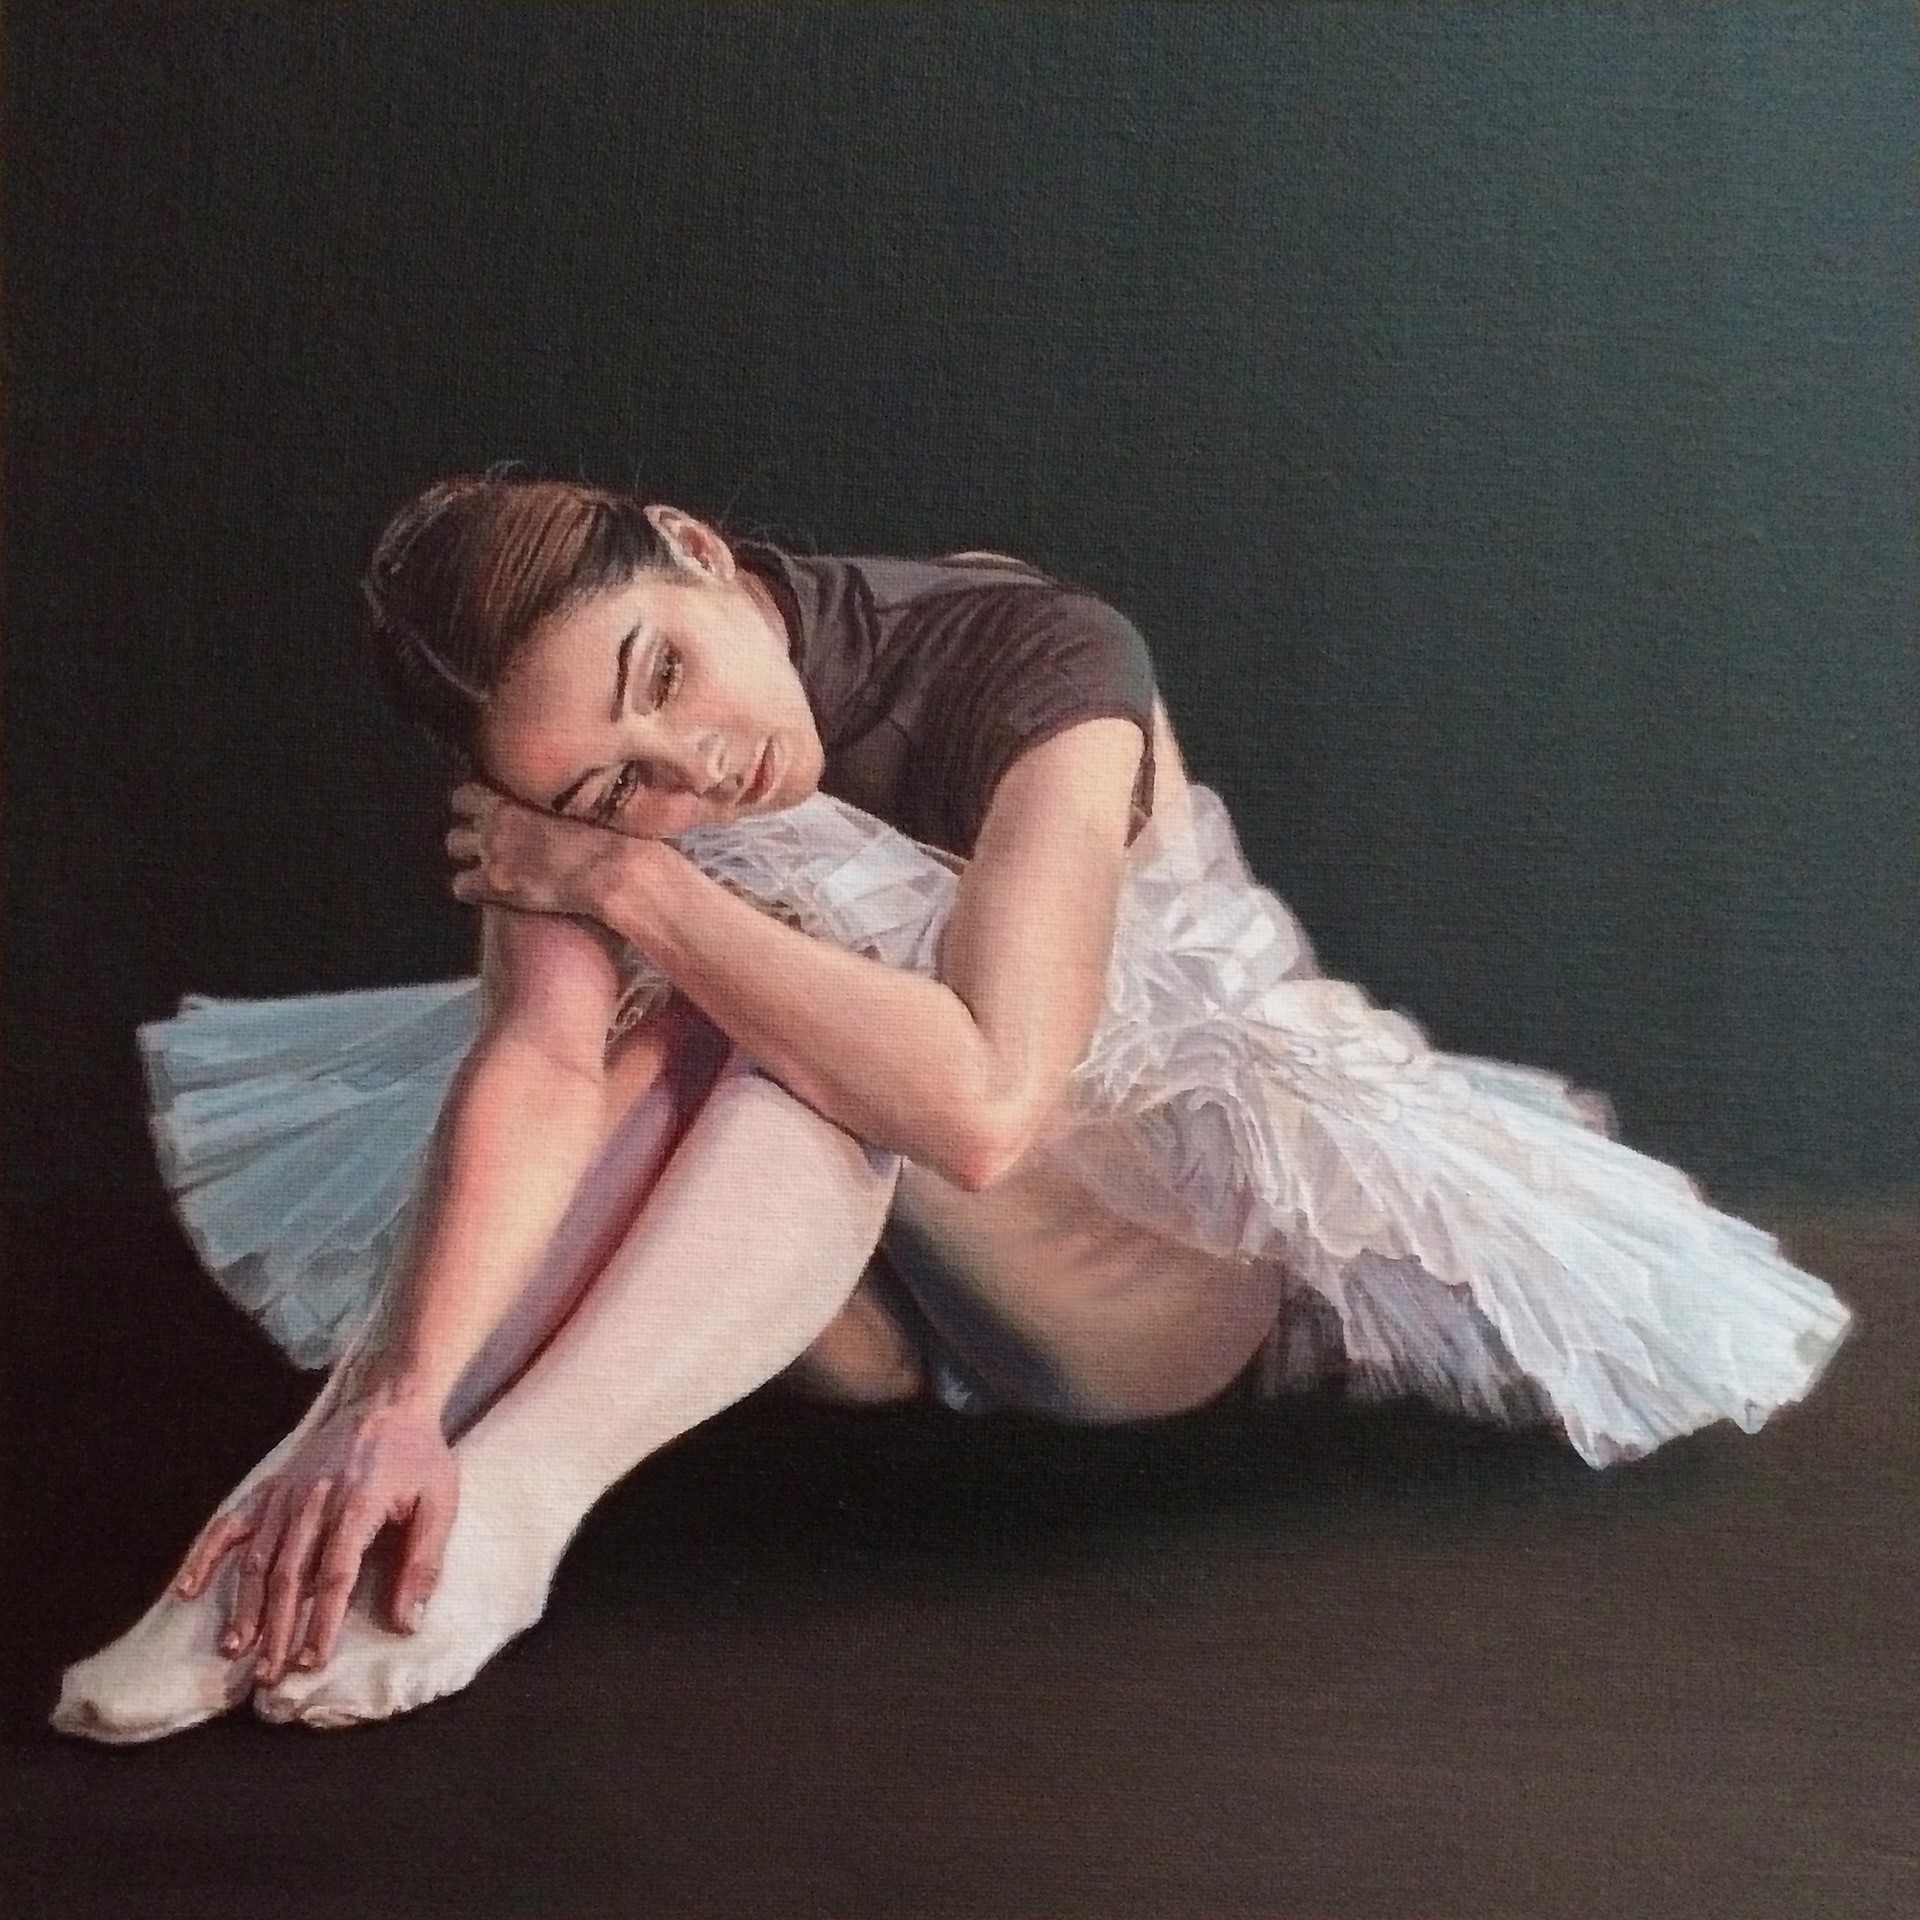 Ballerina in White Tutu by Vlasta Smola